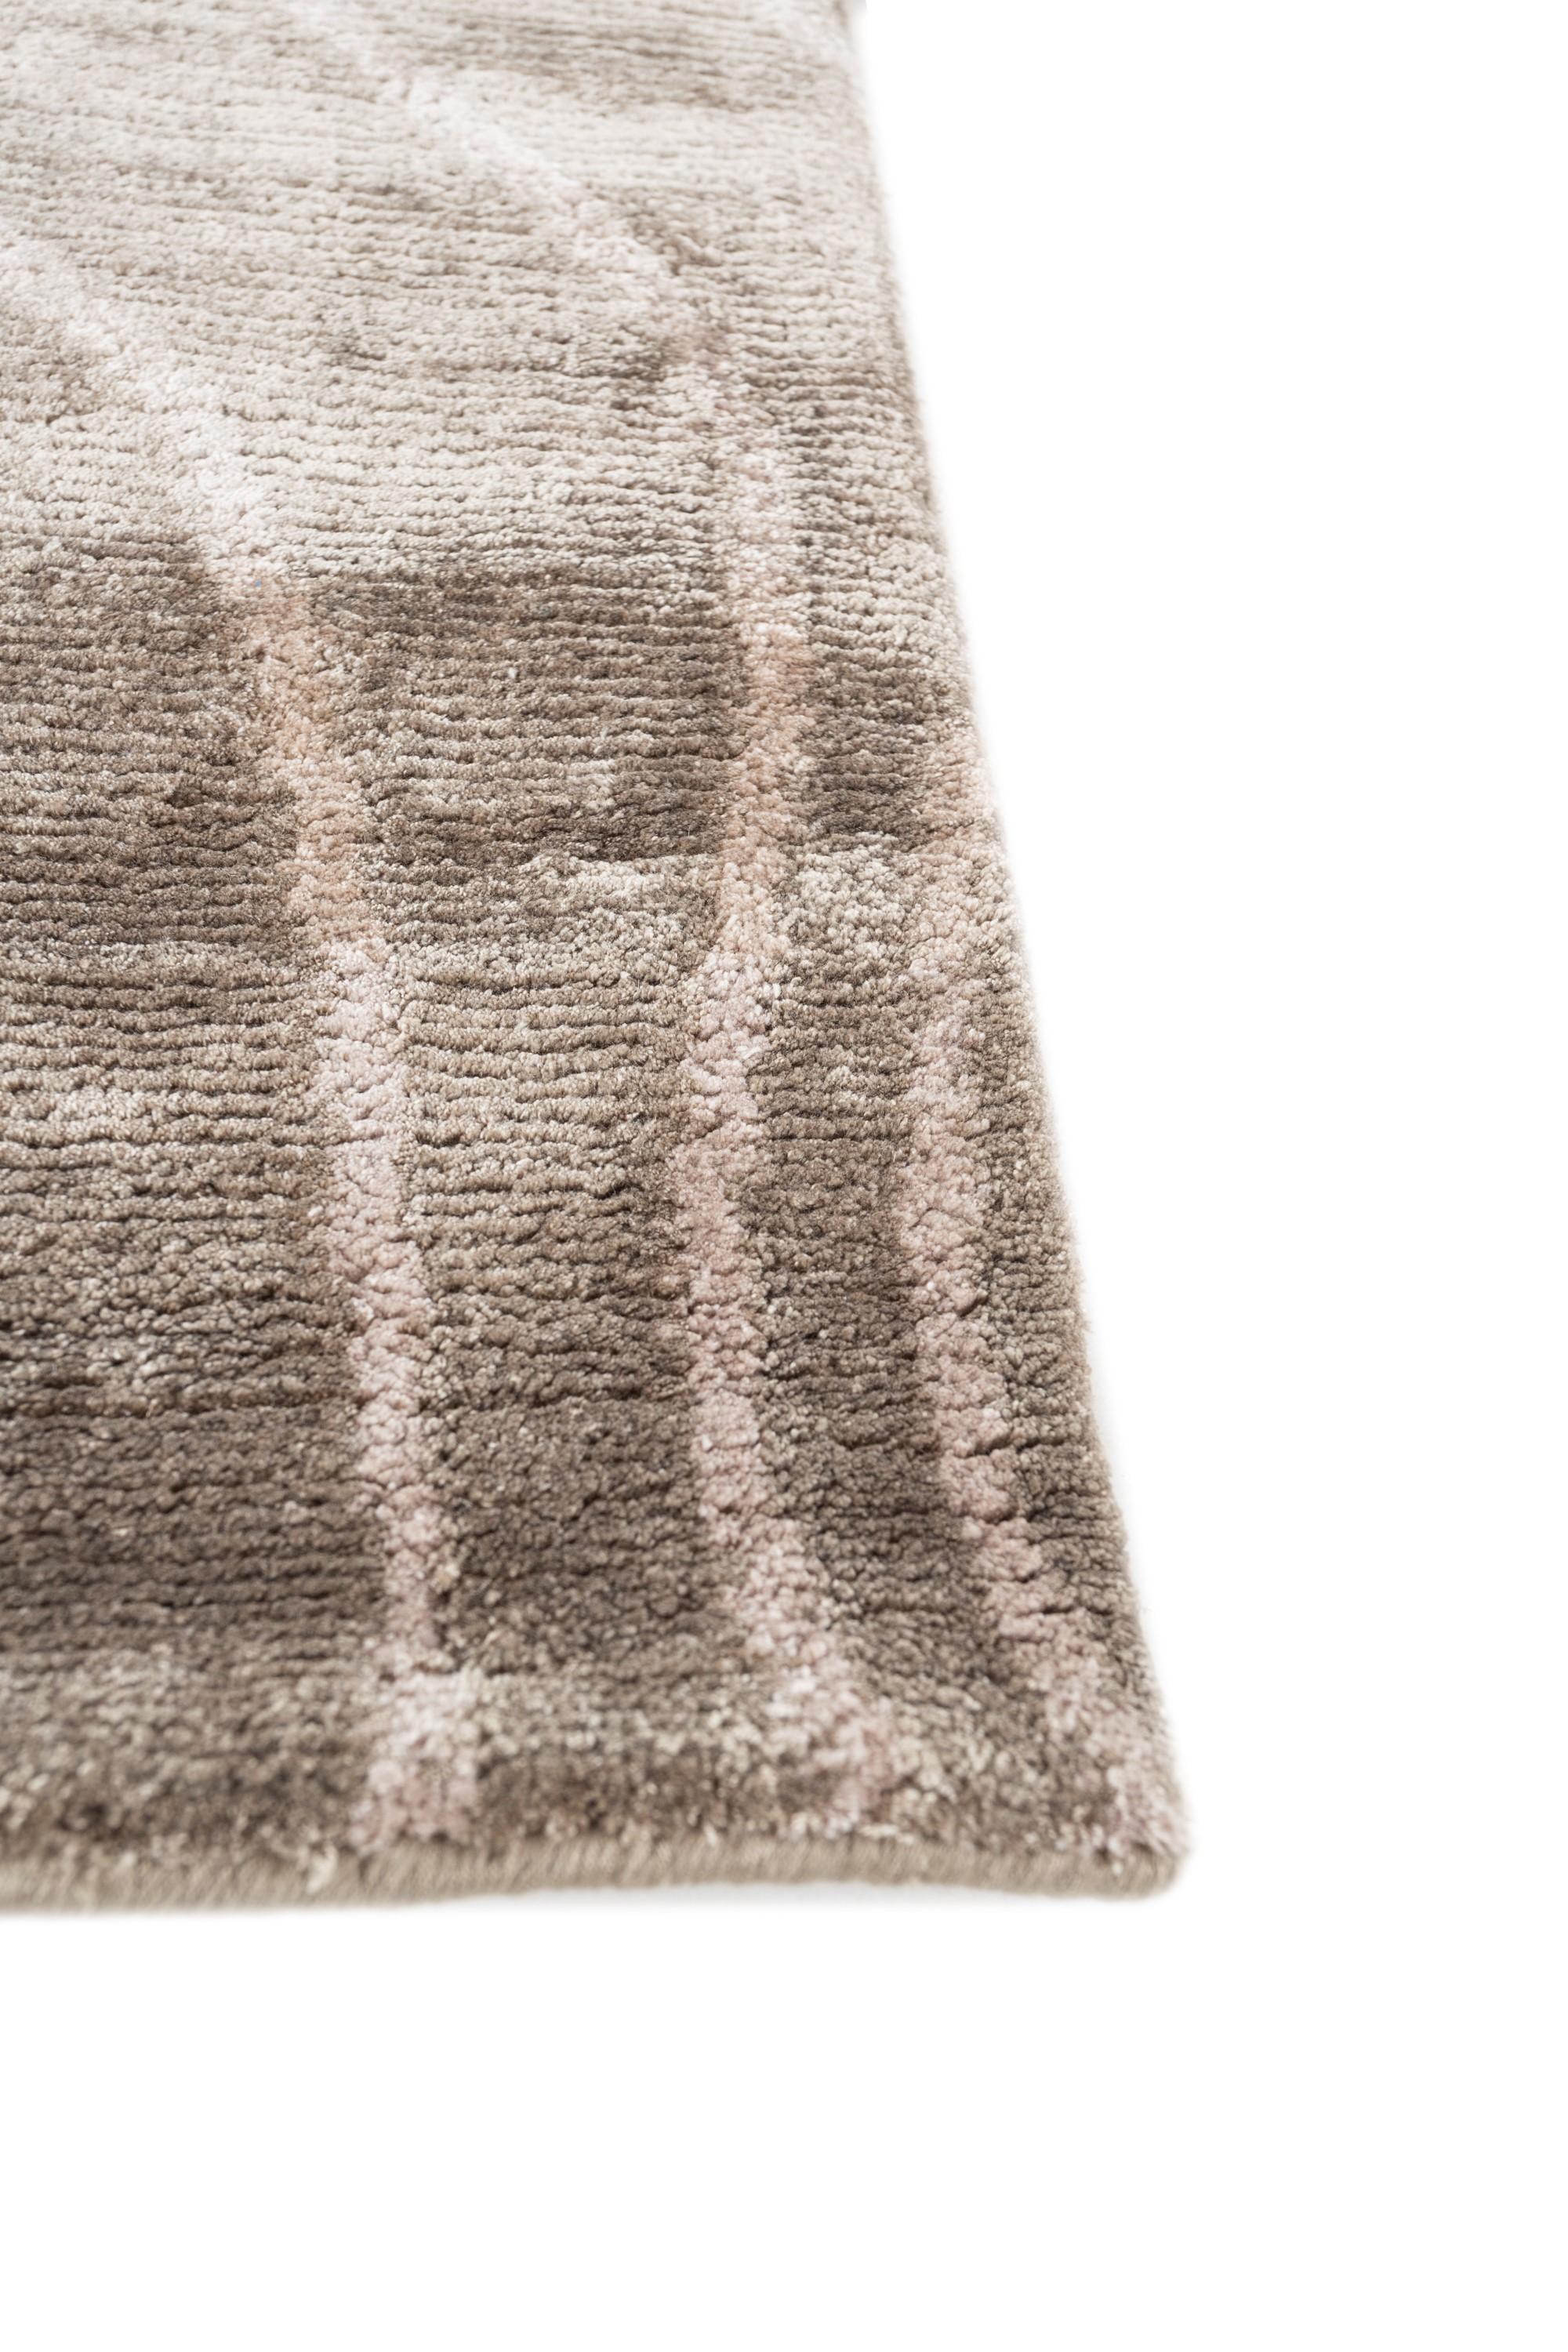 Avez-vous vu ce tapis noué à la main, méticuleusement fabriqué dans les régions rurales de l'Inde ? Avec une palette ton sur ton, une couleur de fond champignon et une bordure taupe foncé, ce tapis moderne rehausse sans effort l'ambiance de